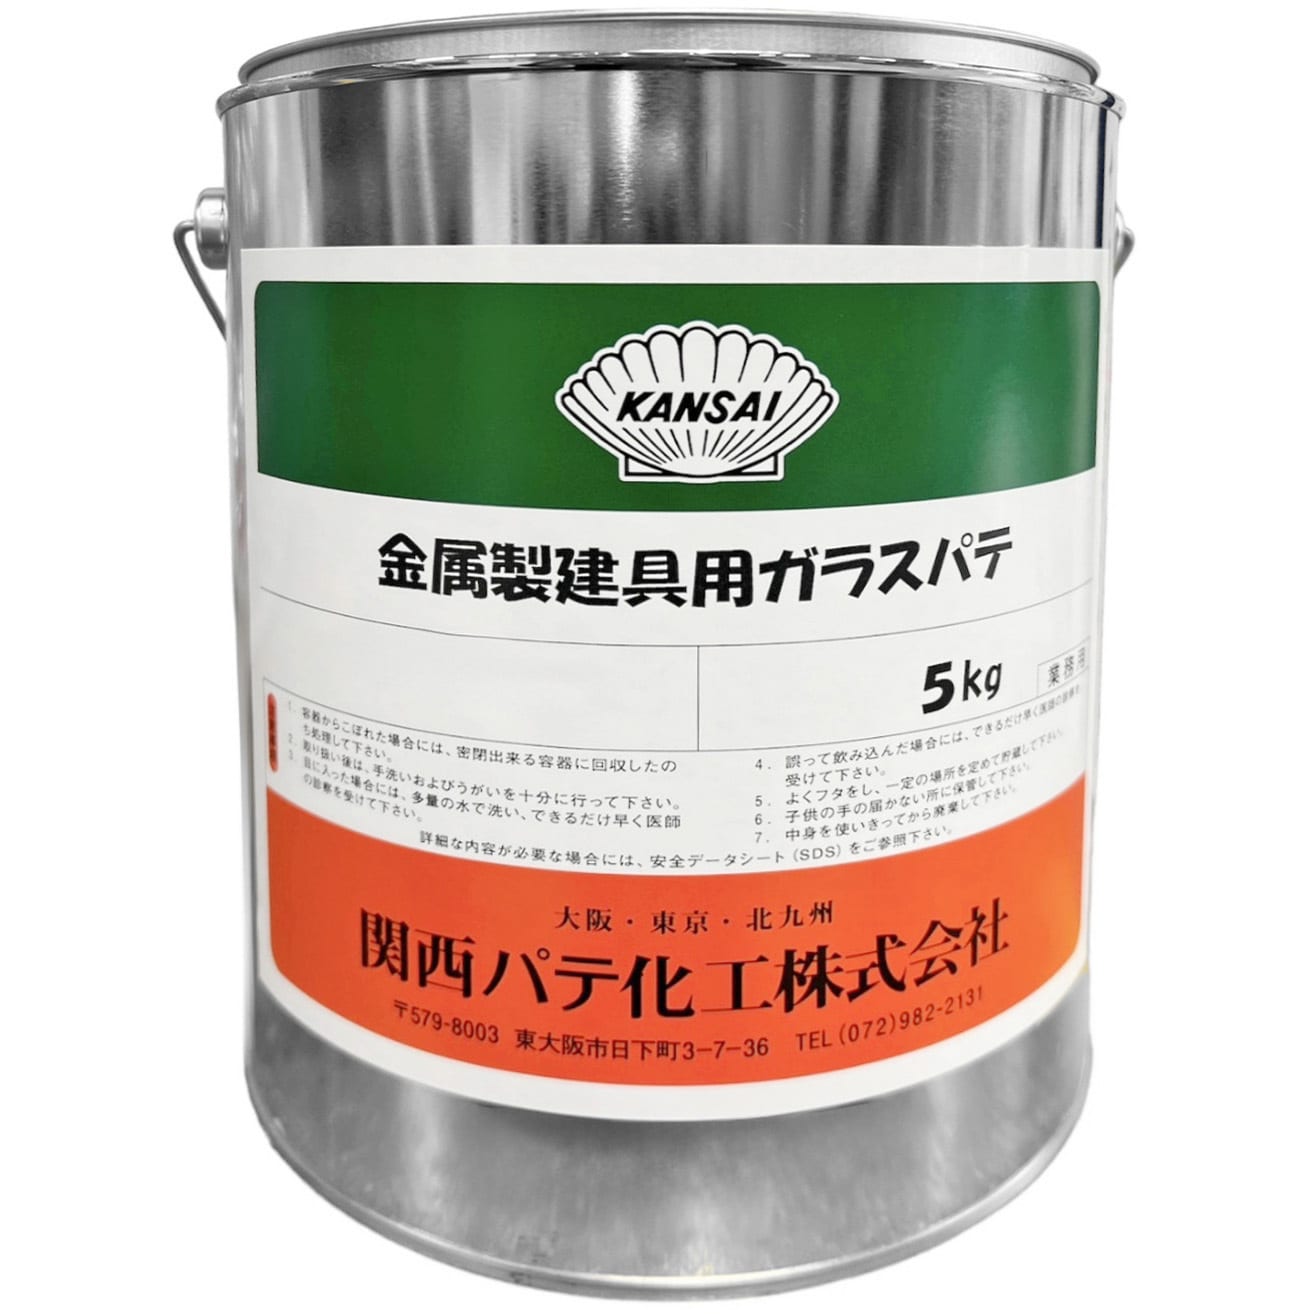 白パテ 油性 1缶(5kg) 関西パテ 【通販サイトMonotaRO】